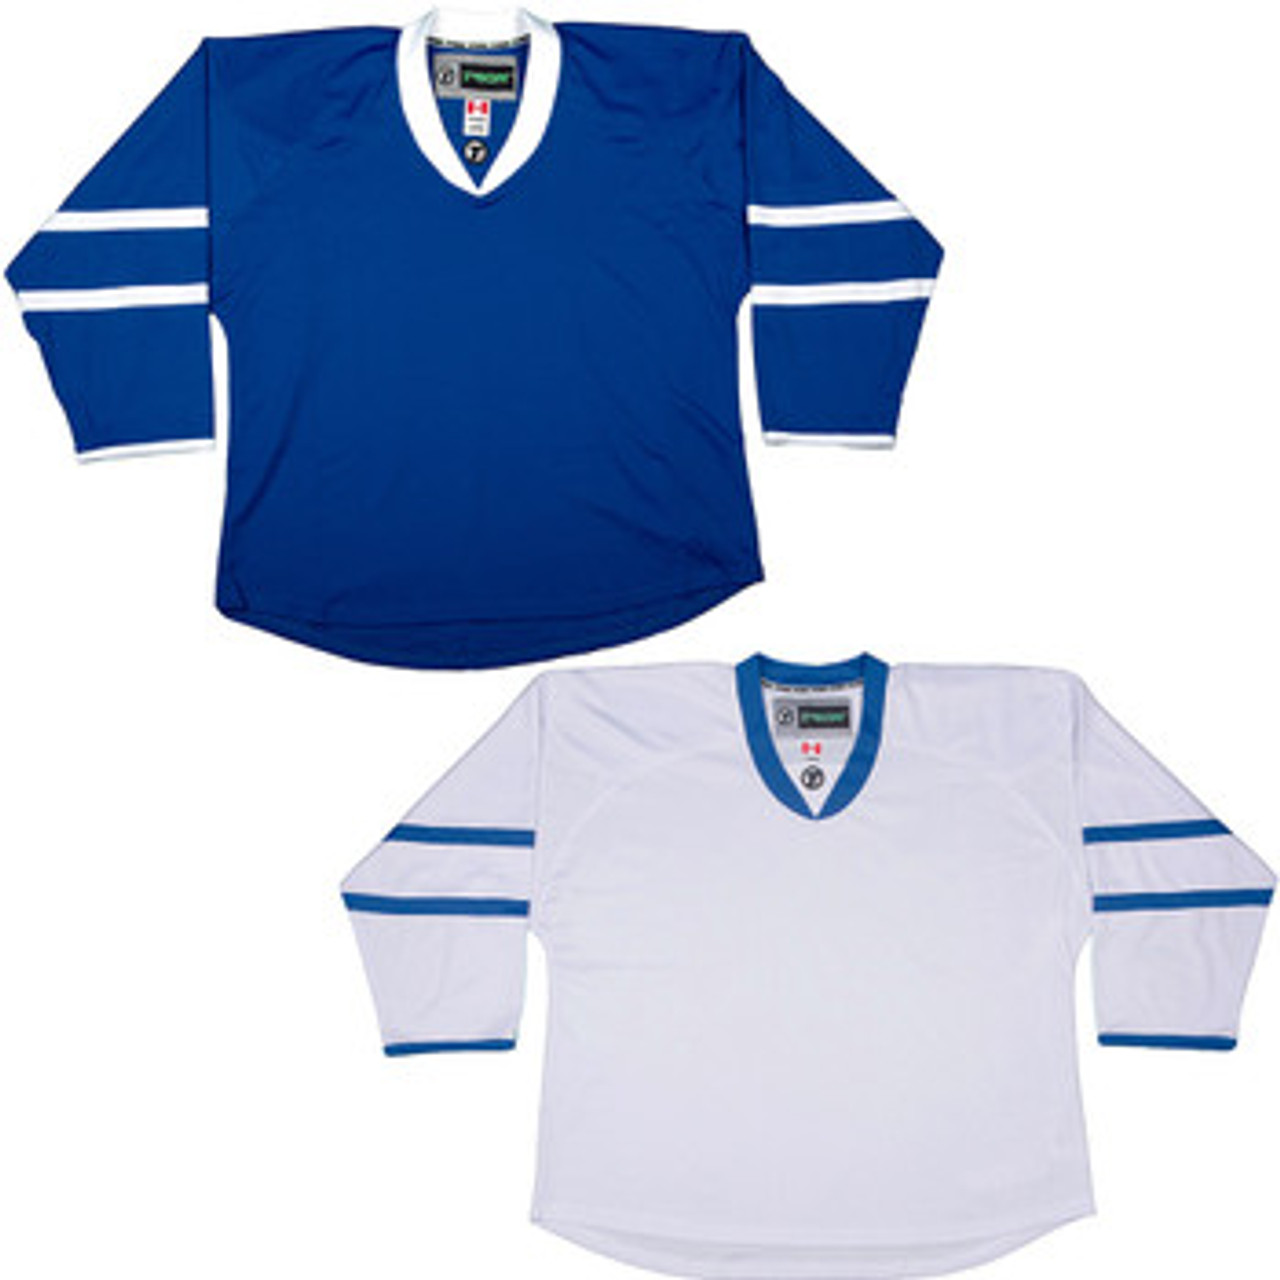 uncrested nhl hockey jerseys | www 